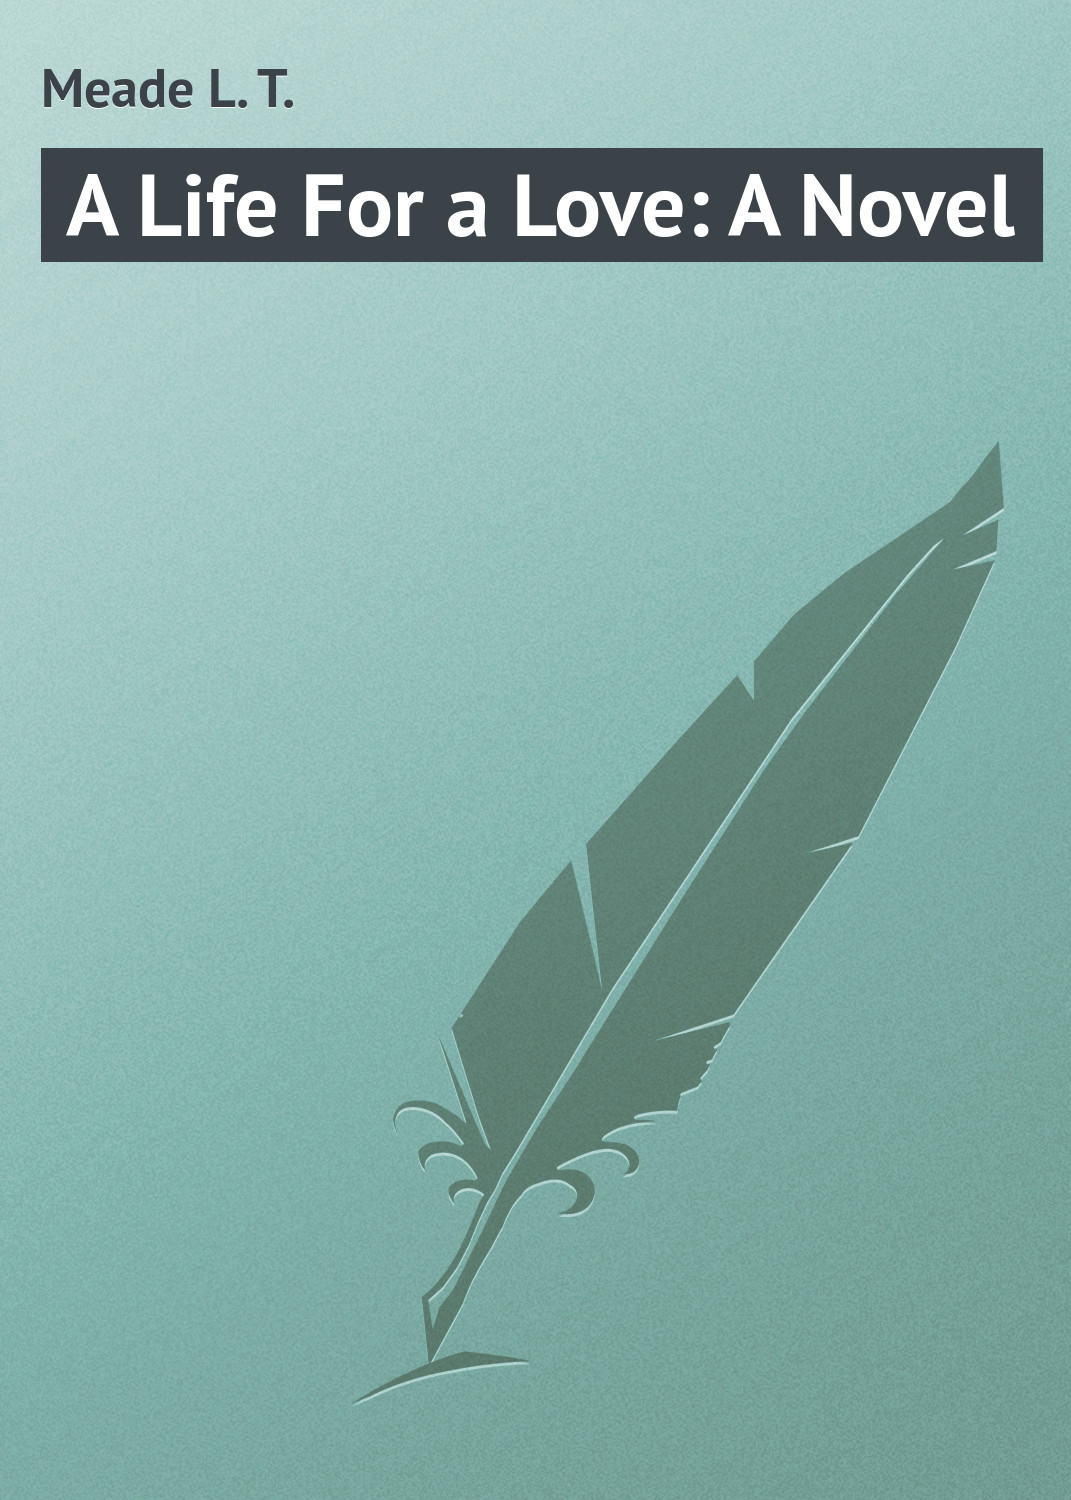 Книга A Life For a Love: A Novel из серии , созданная L. Meade, может относится к жанру Зарубежная классика. Стоимость электронной книги A Life For a Love: A Novel с идентификатором 23164267 составляет 5.99 руб.